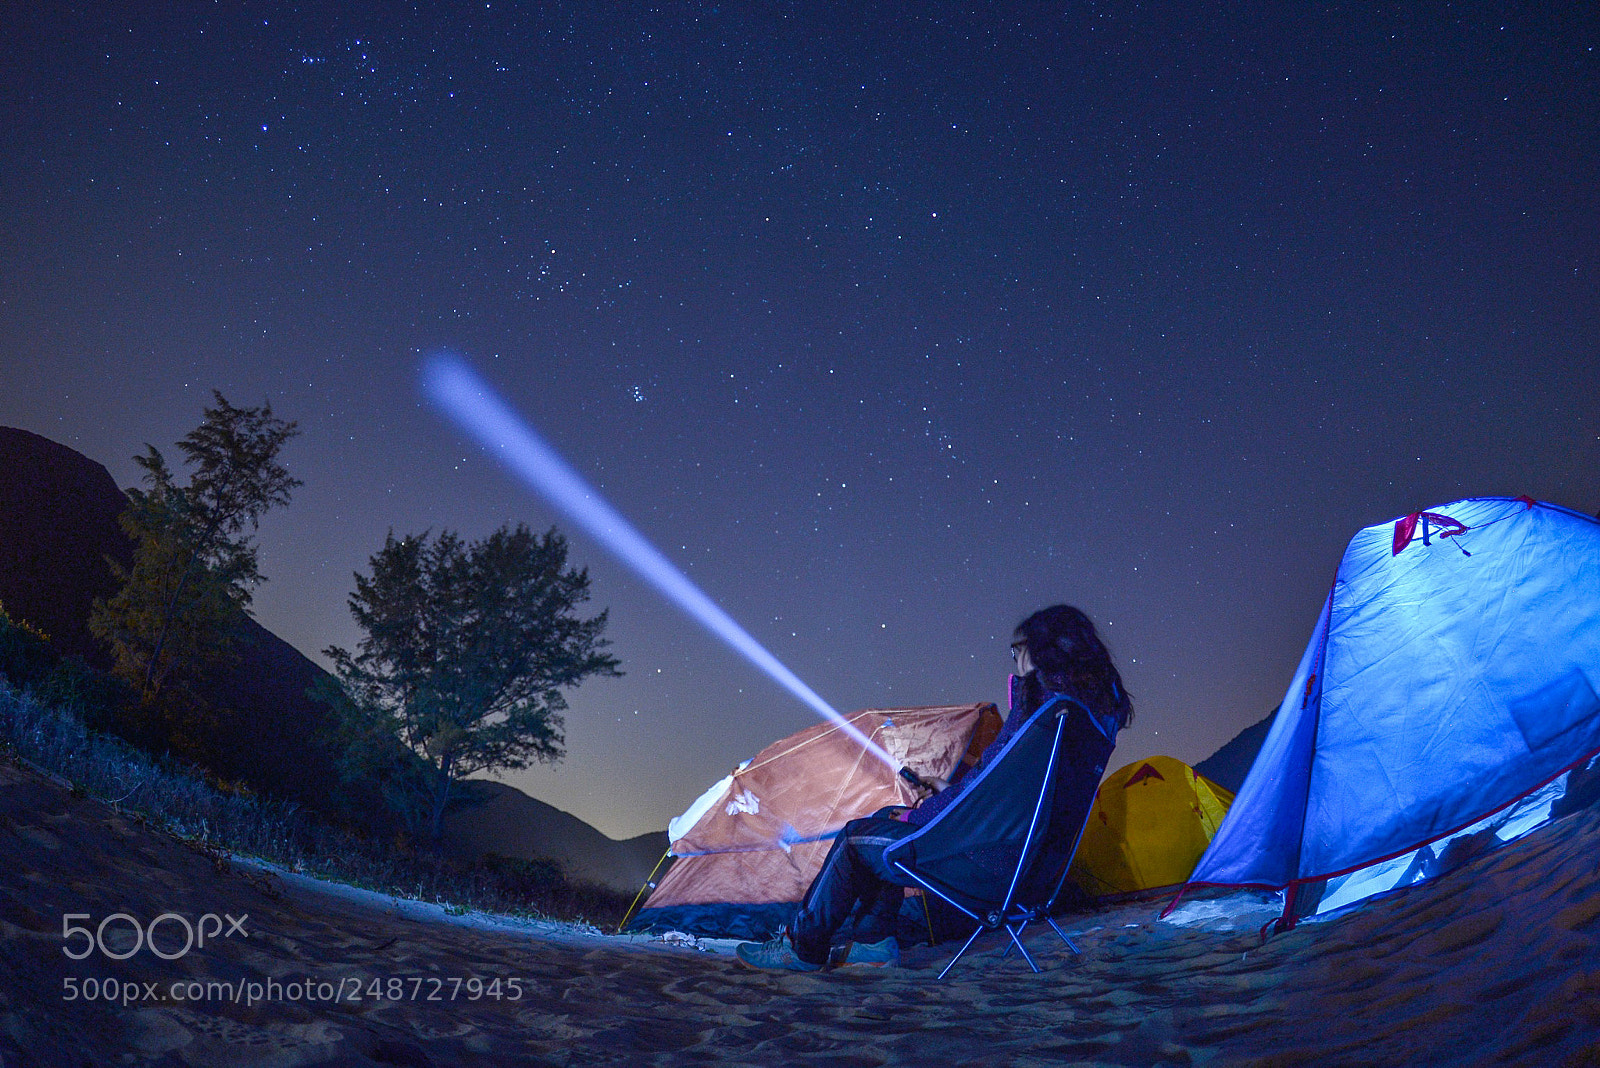 Nikon Df sample photo. Camping at night photography